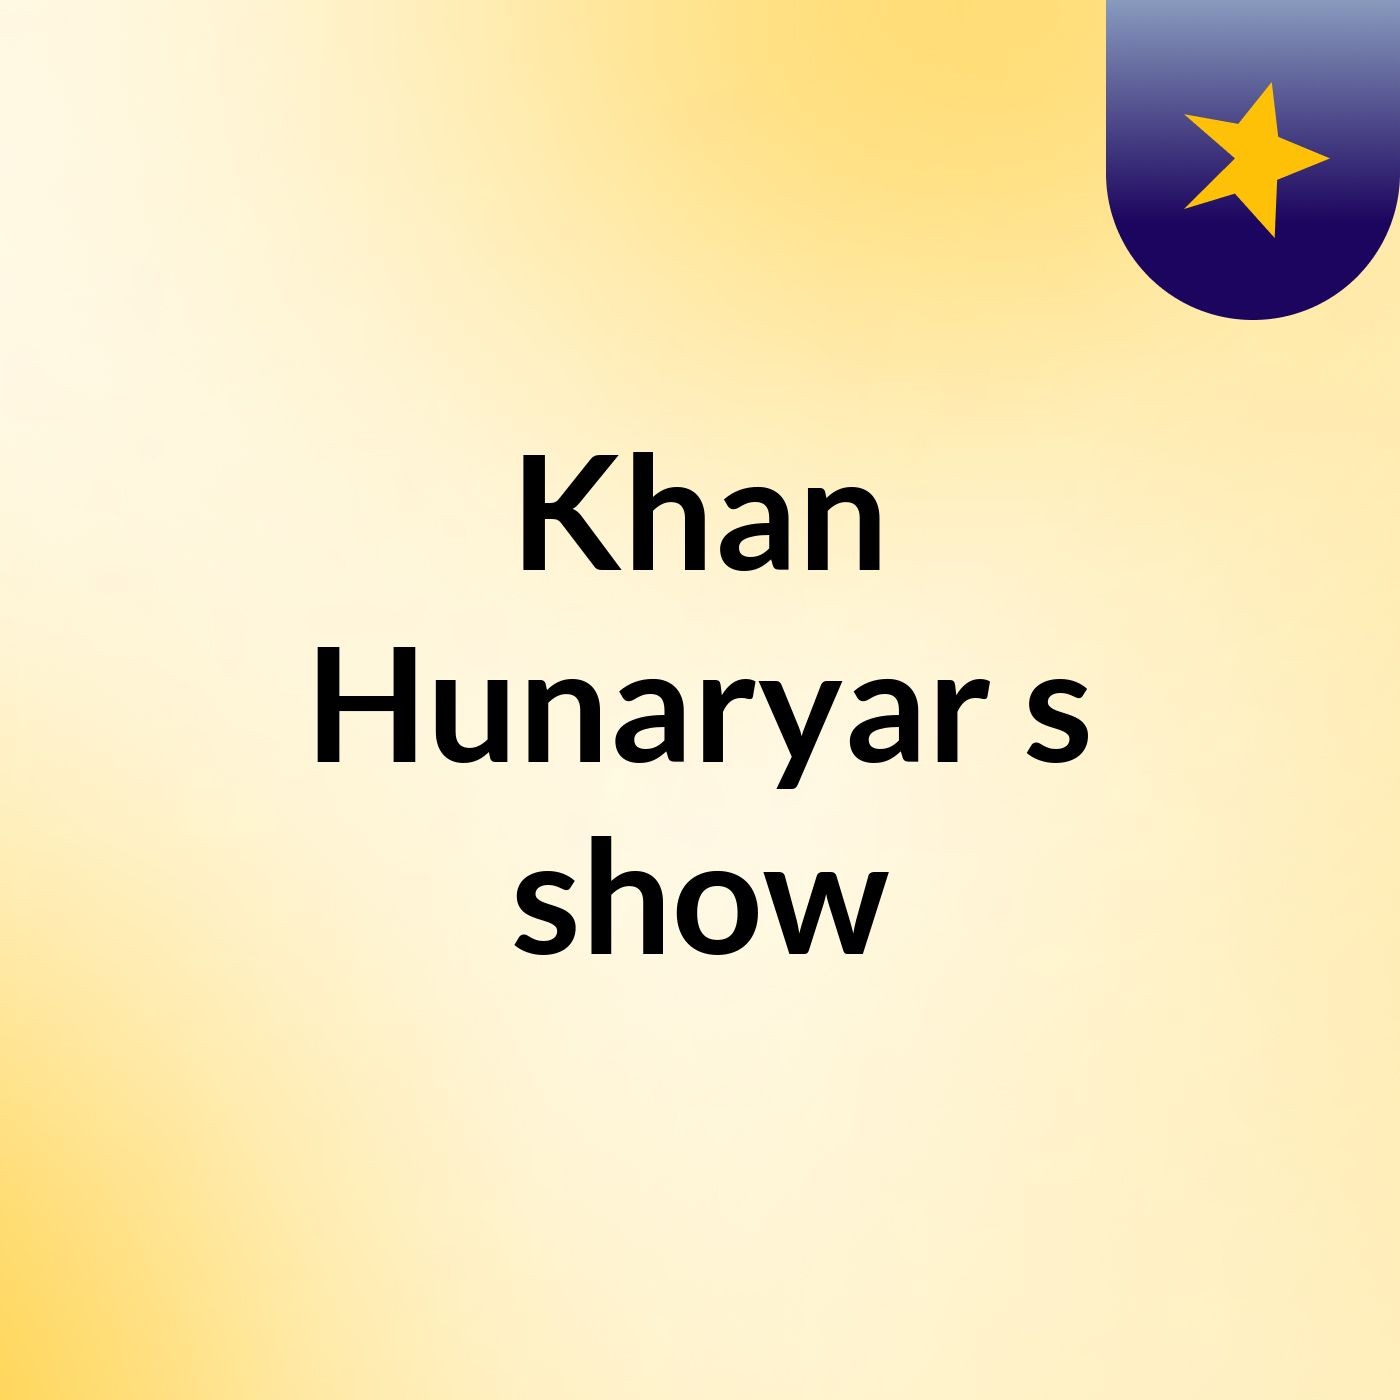 Khan Hunaryar's show